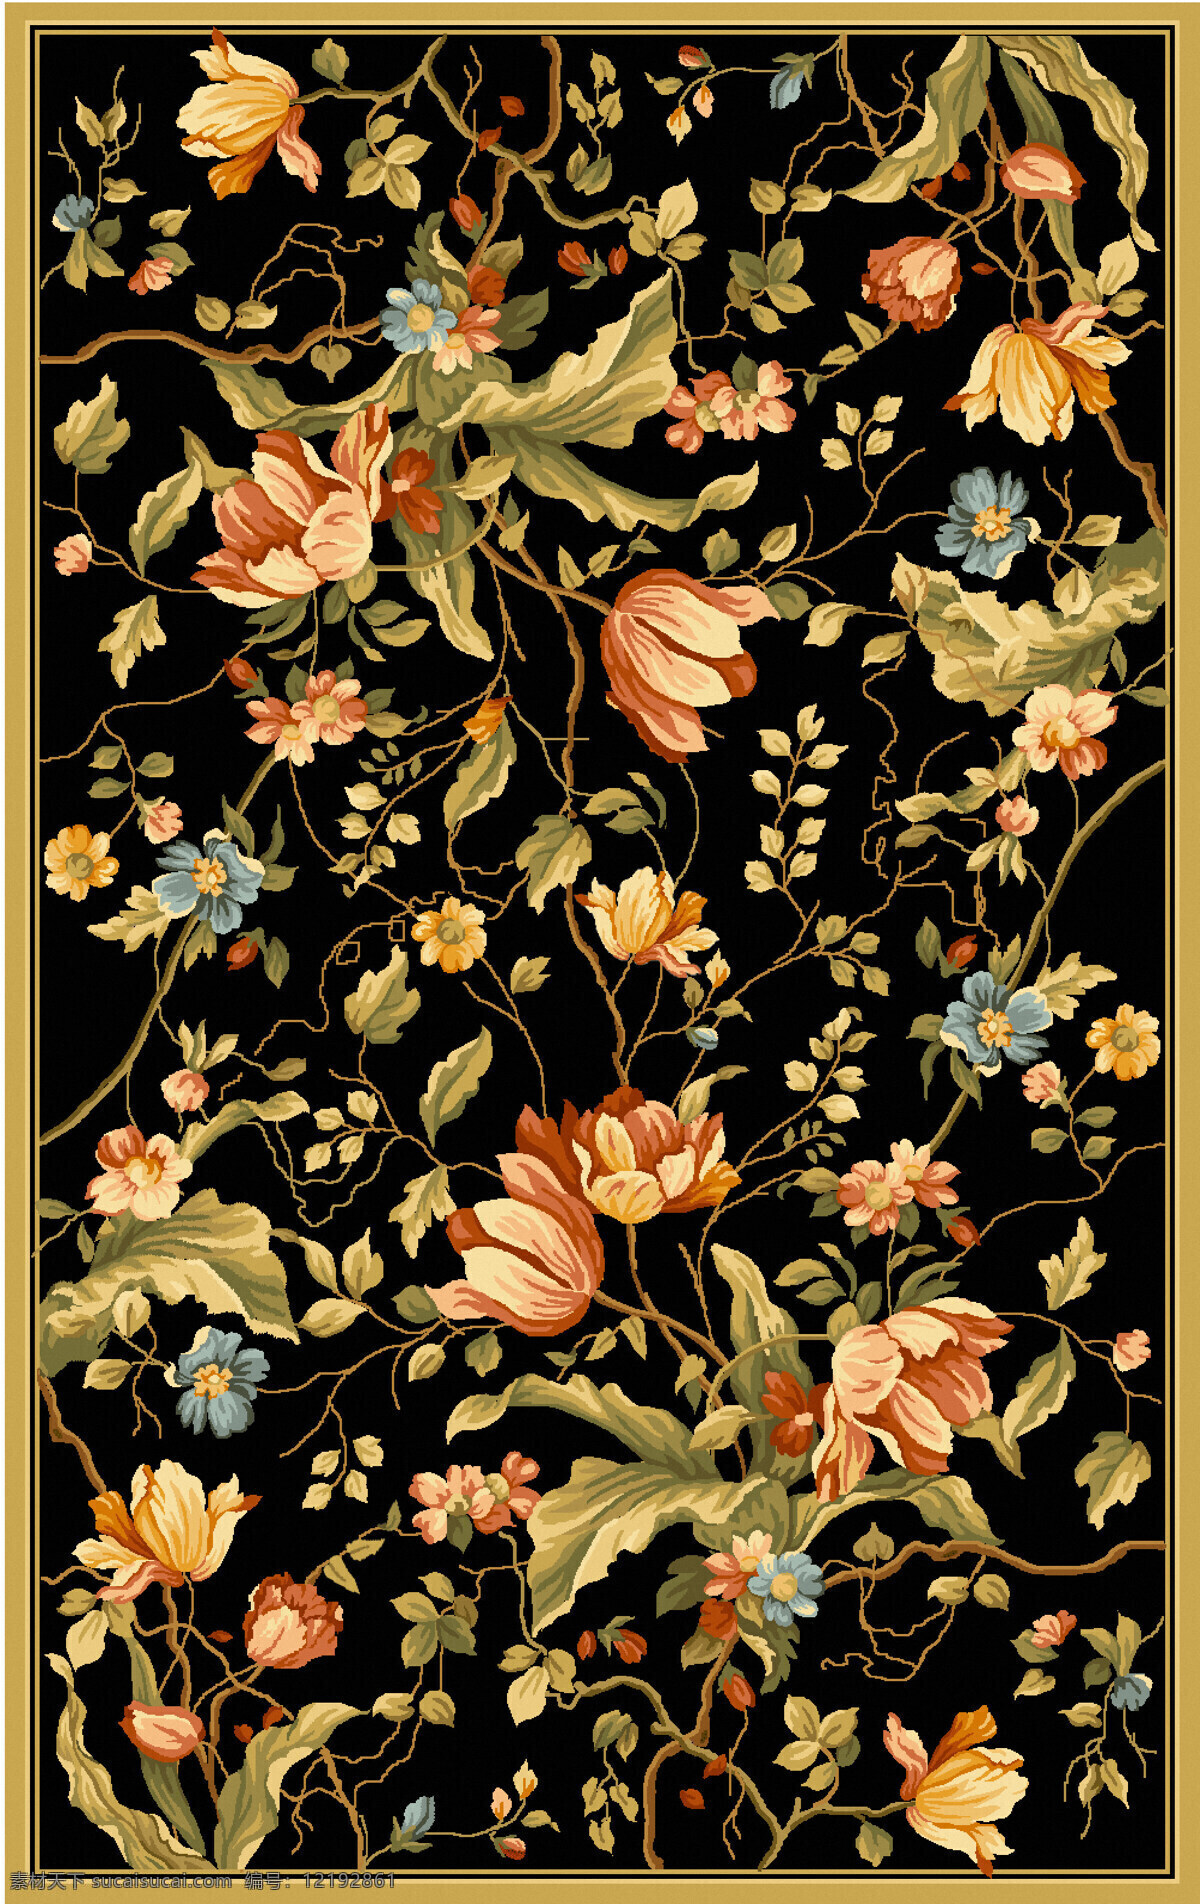 藤类花卉植物 纺织面料 沙发布艺 纹饰 纹样 地毯图案设计 花卉植物围边 满铺 底纹边框 背景底纹